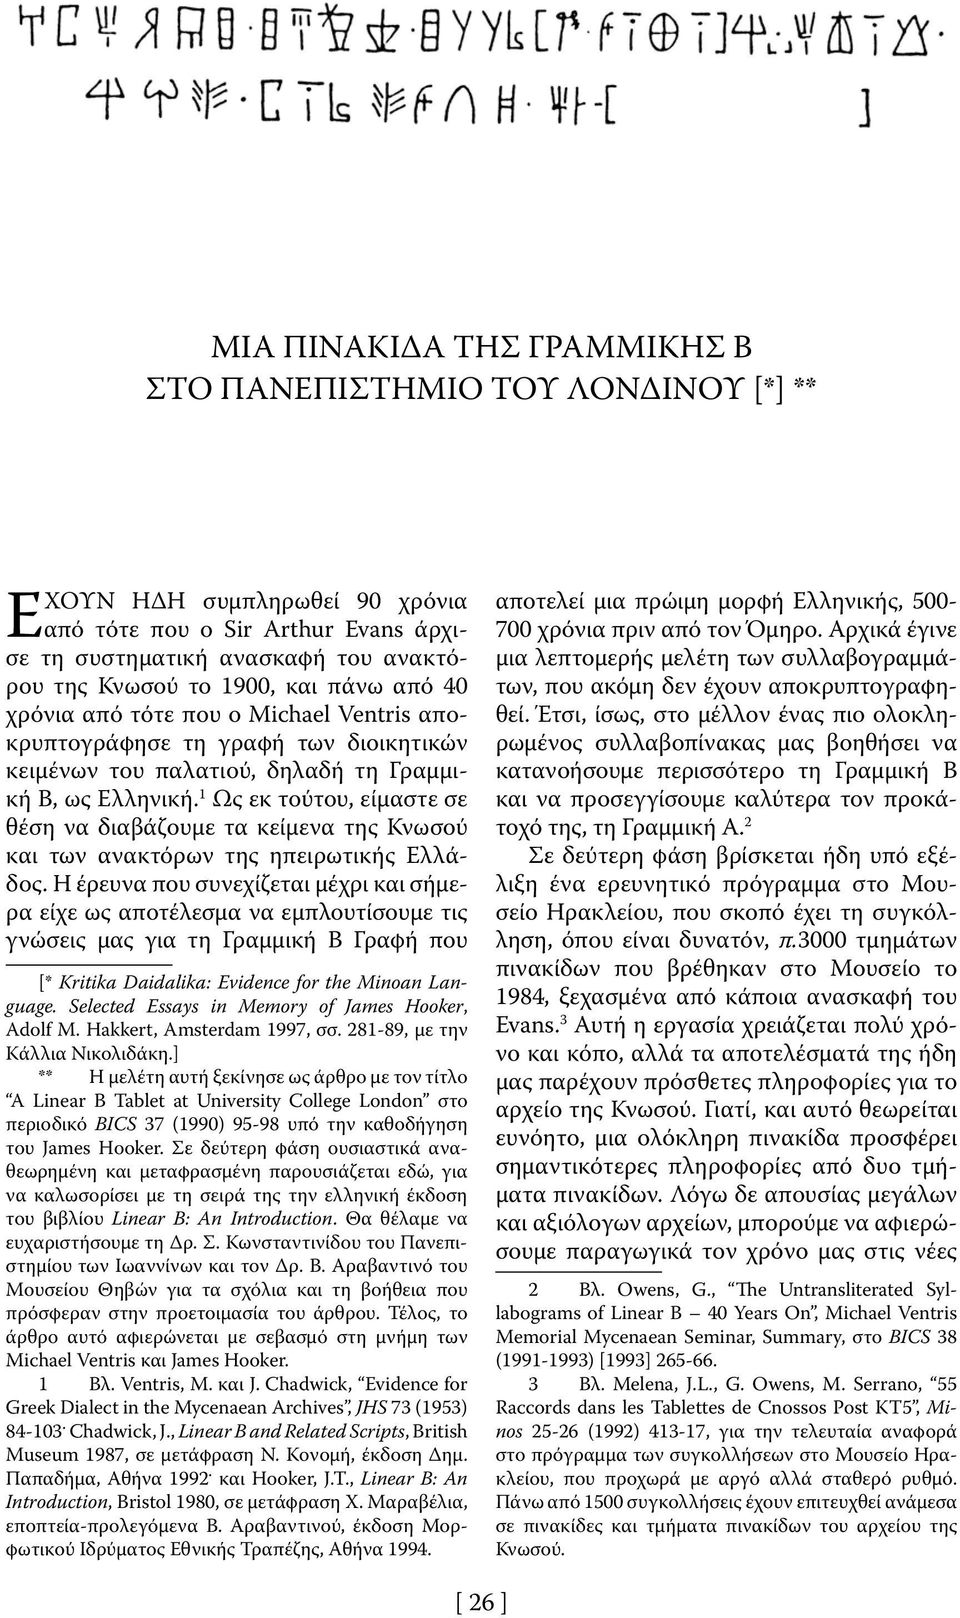 1 Ως εκ τούτου, είμαστε σε θέση να διαβάζουμε τα κείμενα της Κνωσού και των ανακτόρων της ηπειρωτικής Ελλάδος.